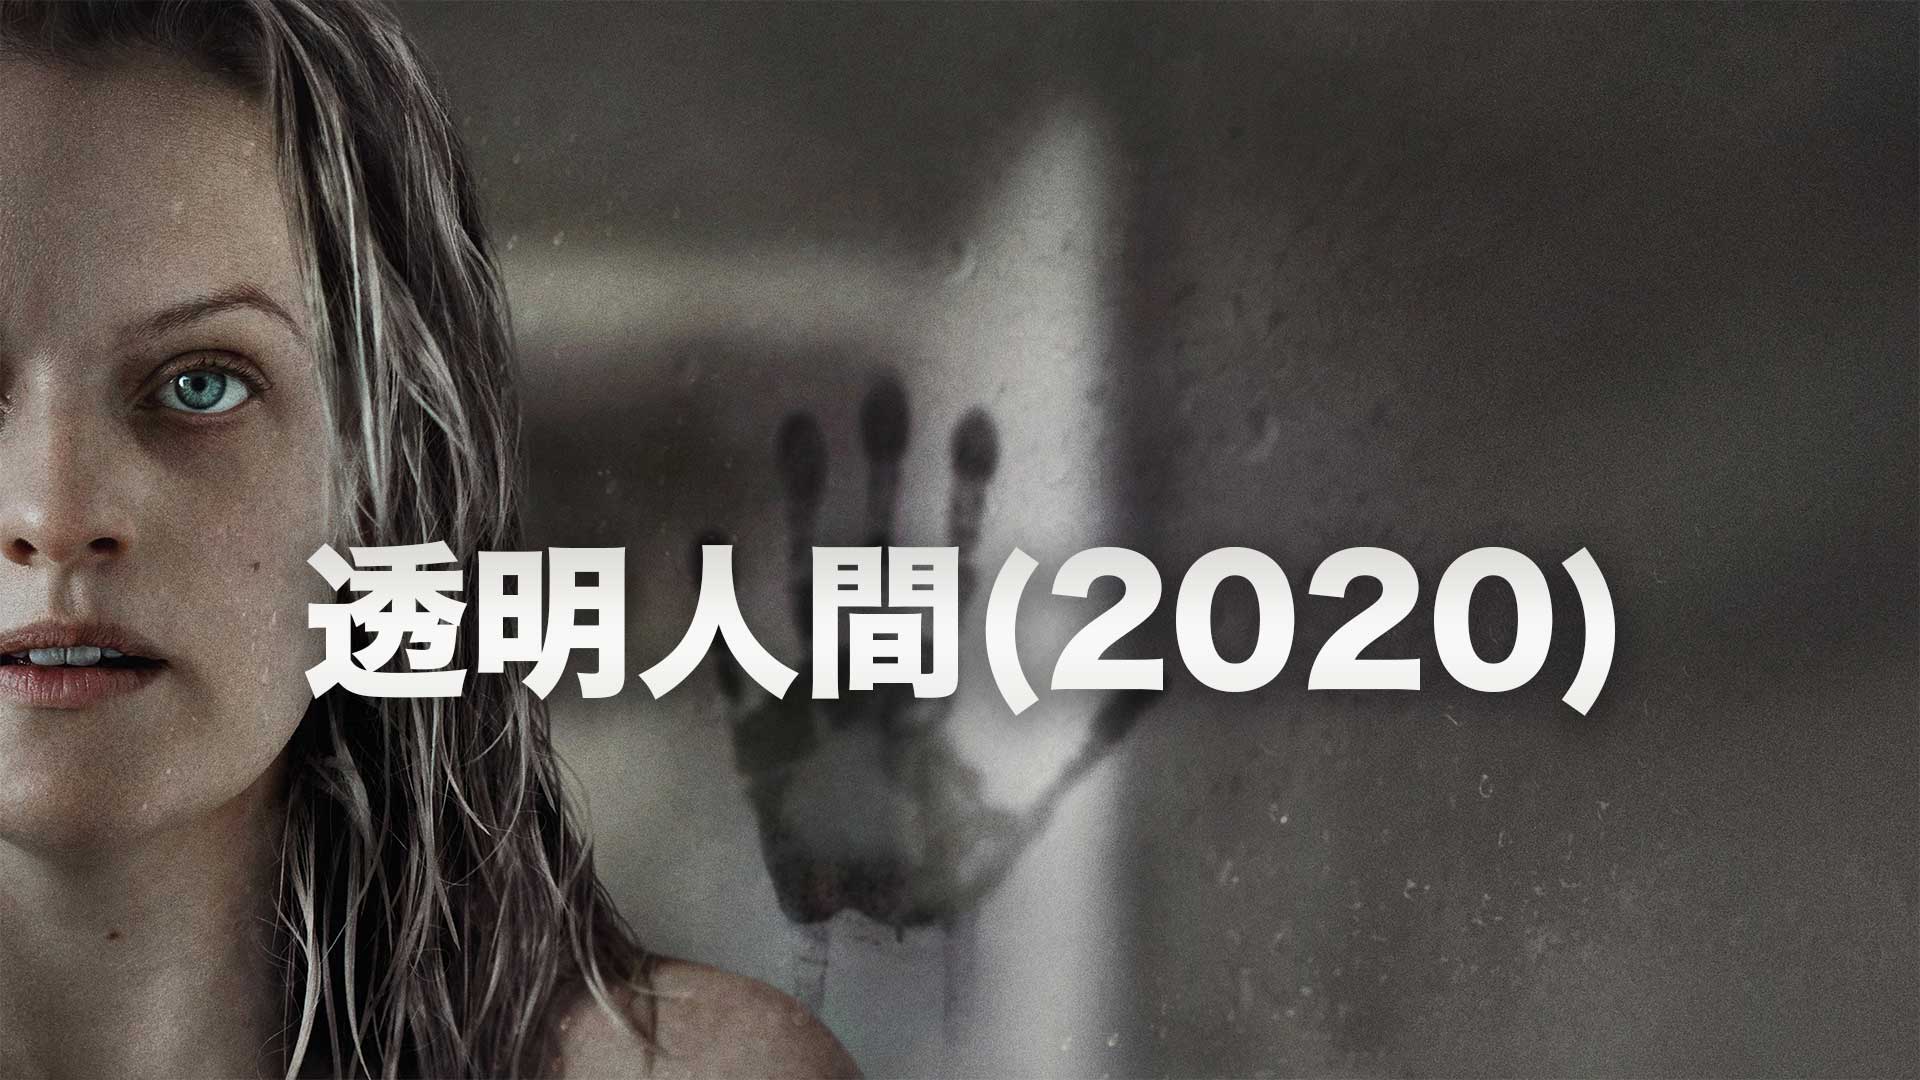 透明人間(2020)